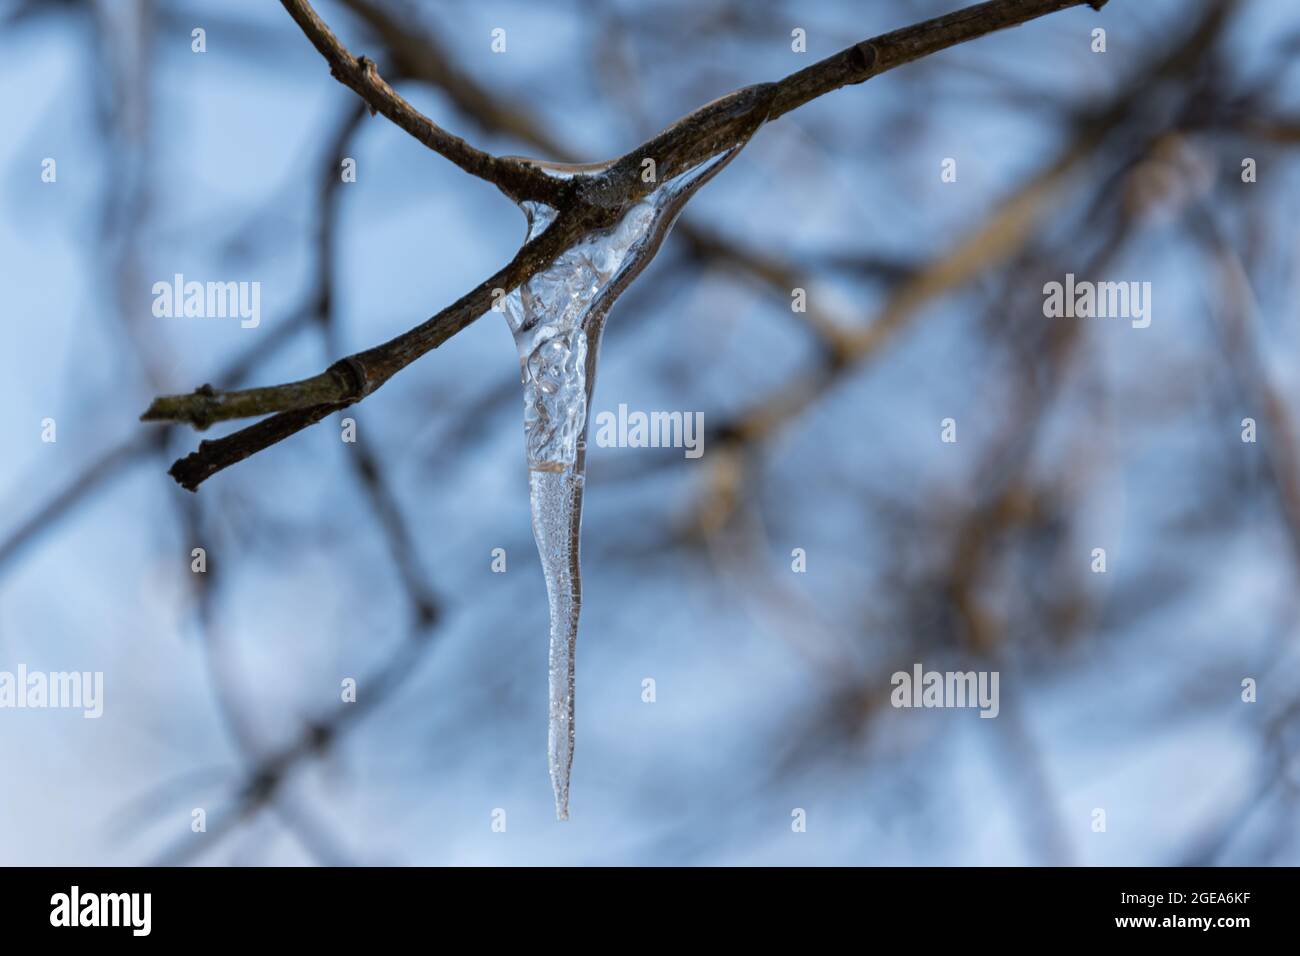 La glace gelée est suspendue à une branche d'arbre en hiver dans le froid Banque D'Images